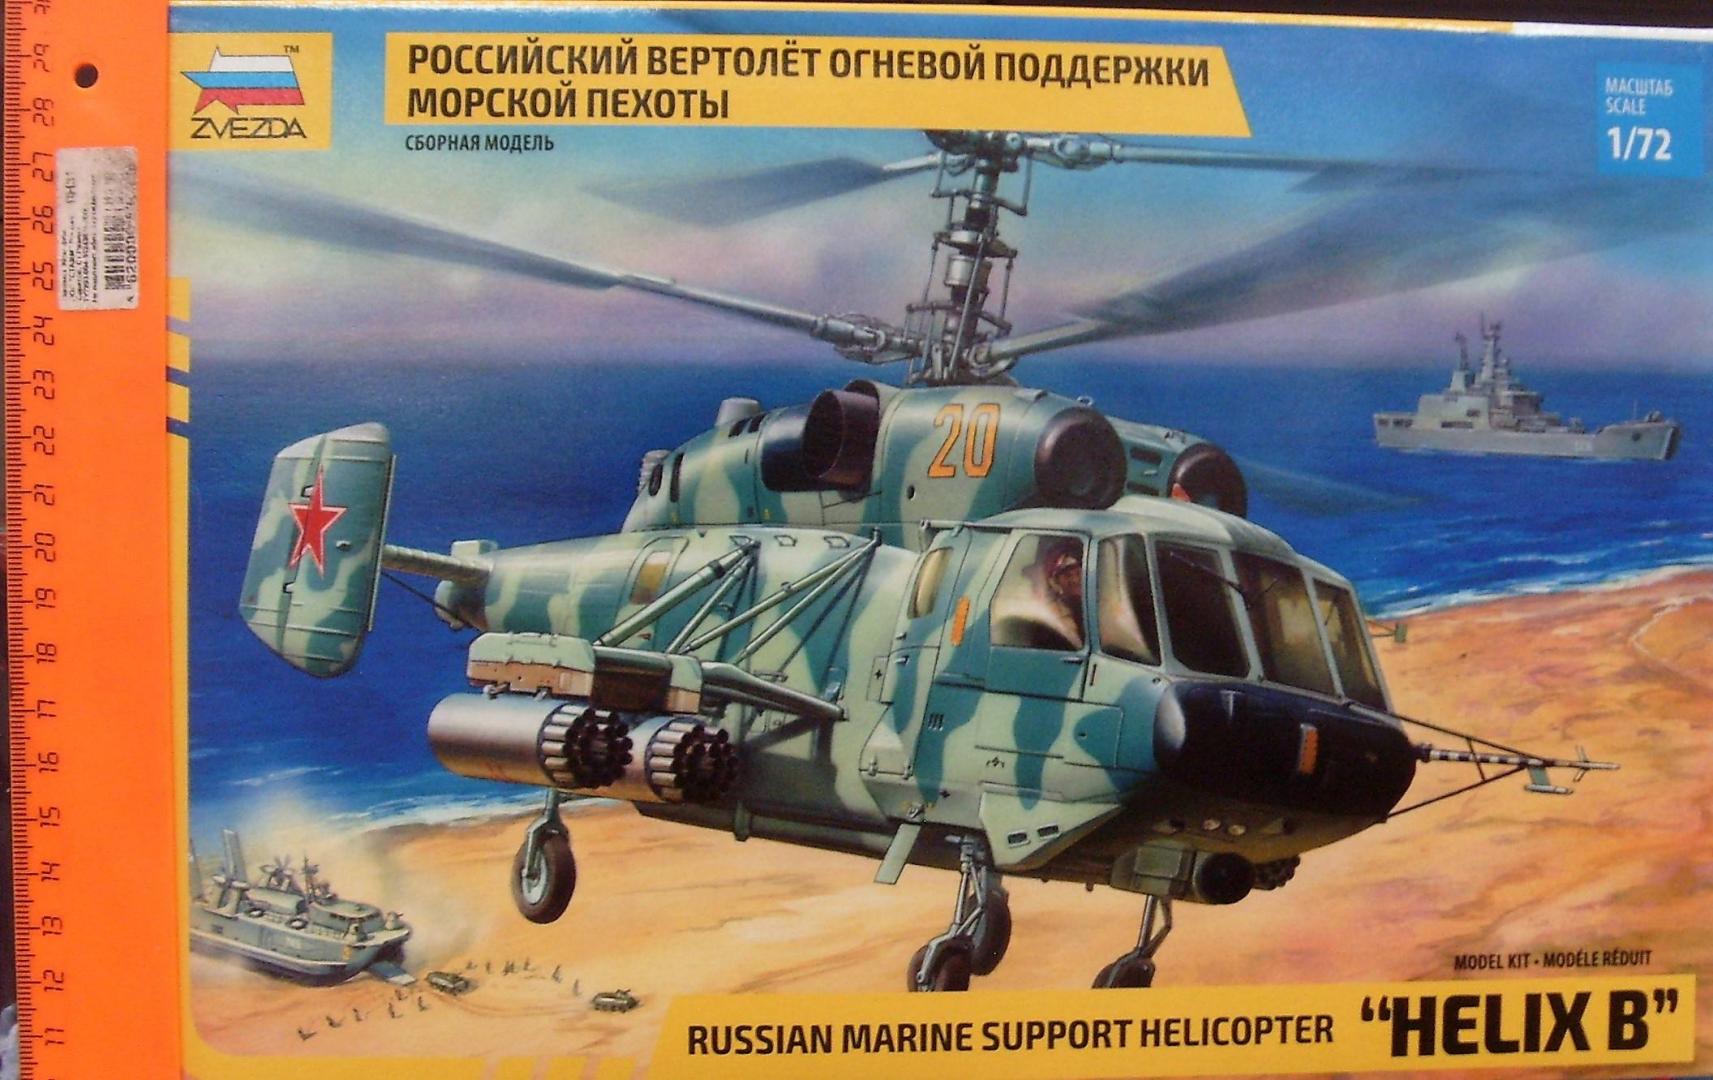 Иллюстрация 2 из 11 для 7221/Советский вертолет огневой поддержки Ка-29 | Лабиринт - игрушки. Источник: Соловьев  Владимир